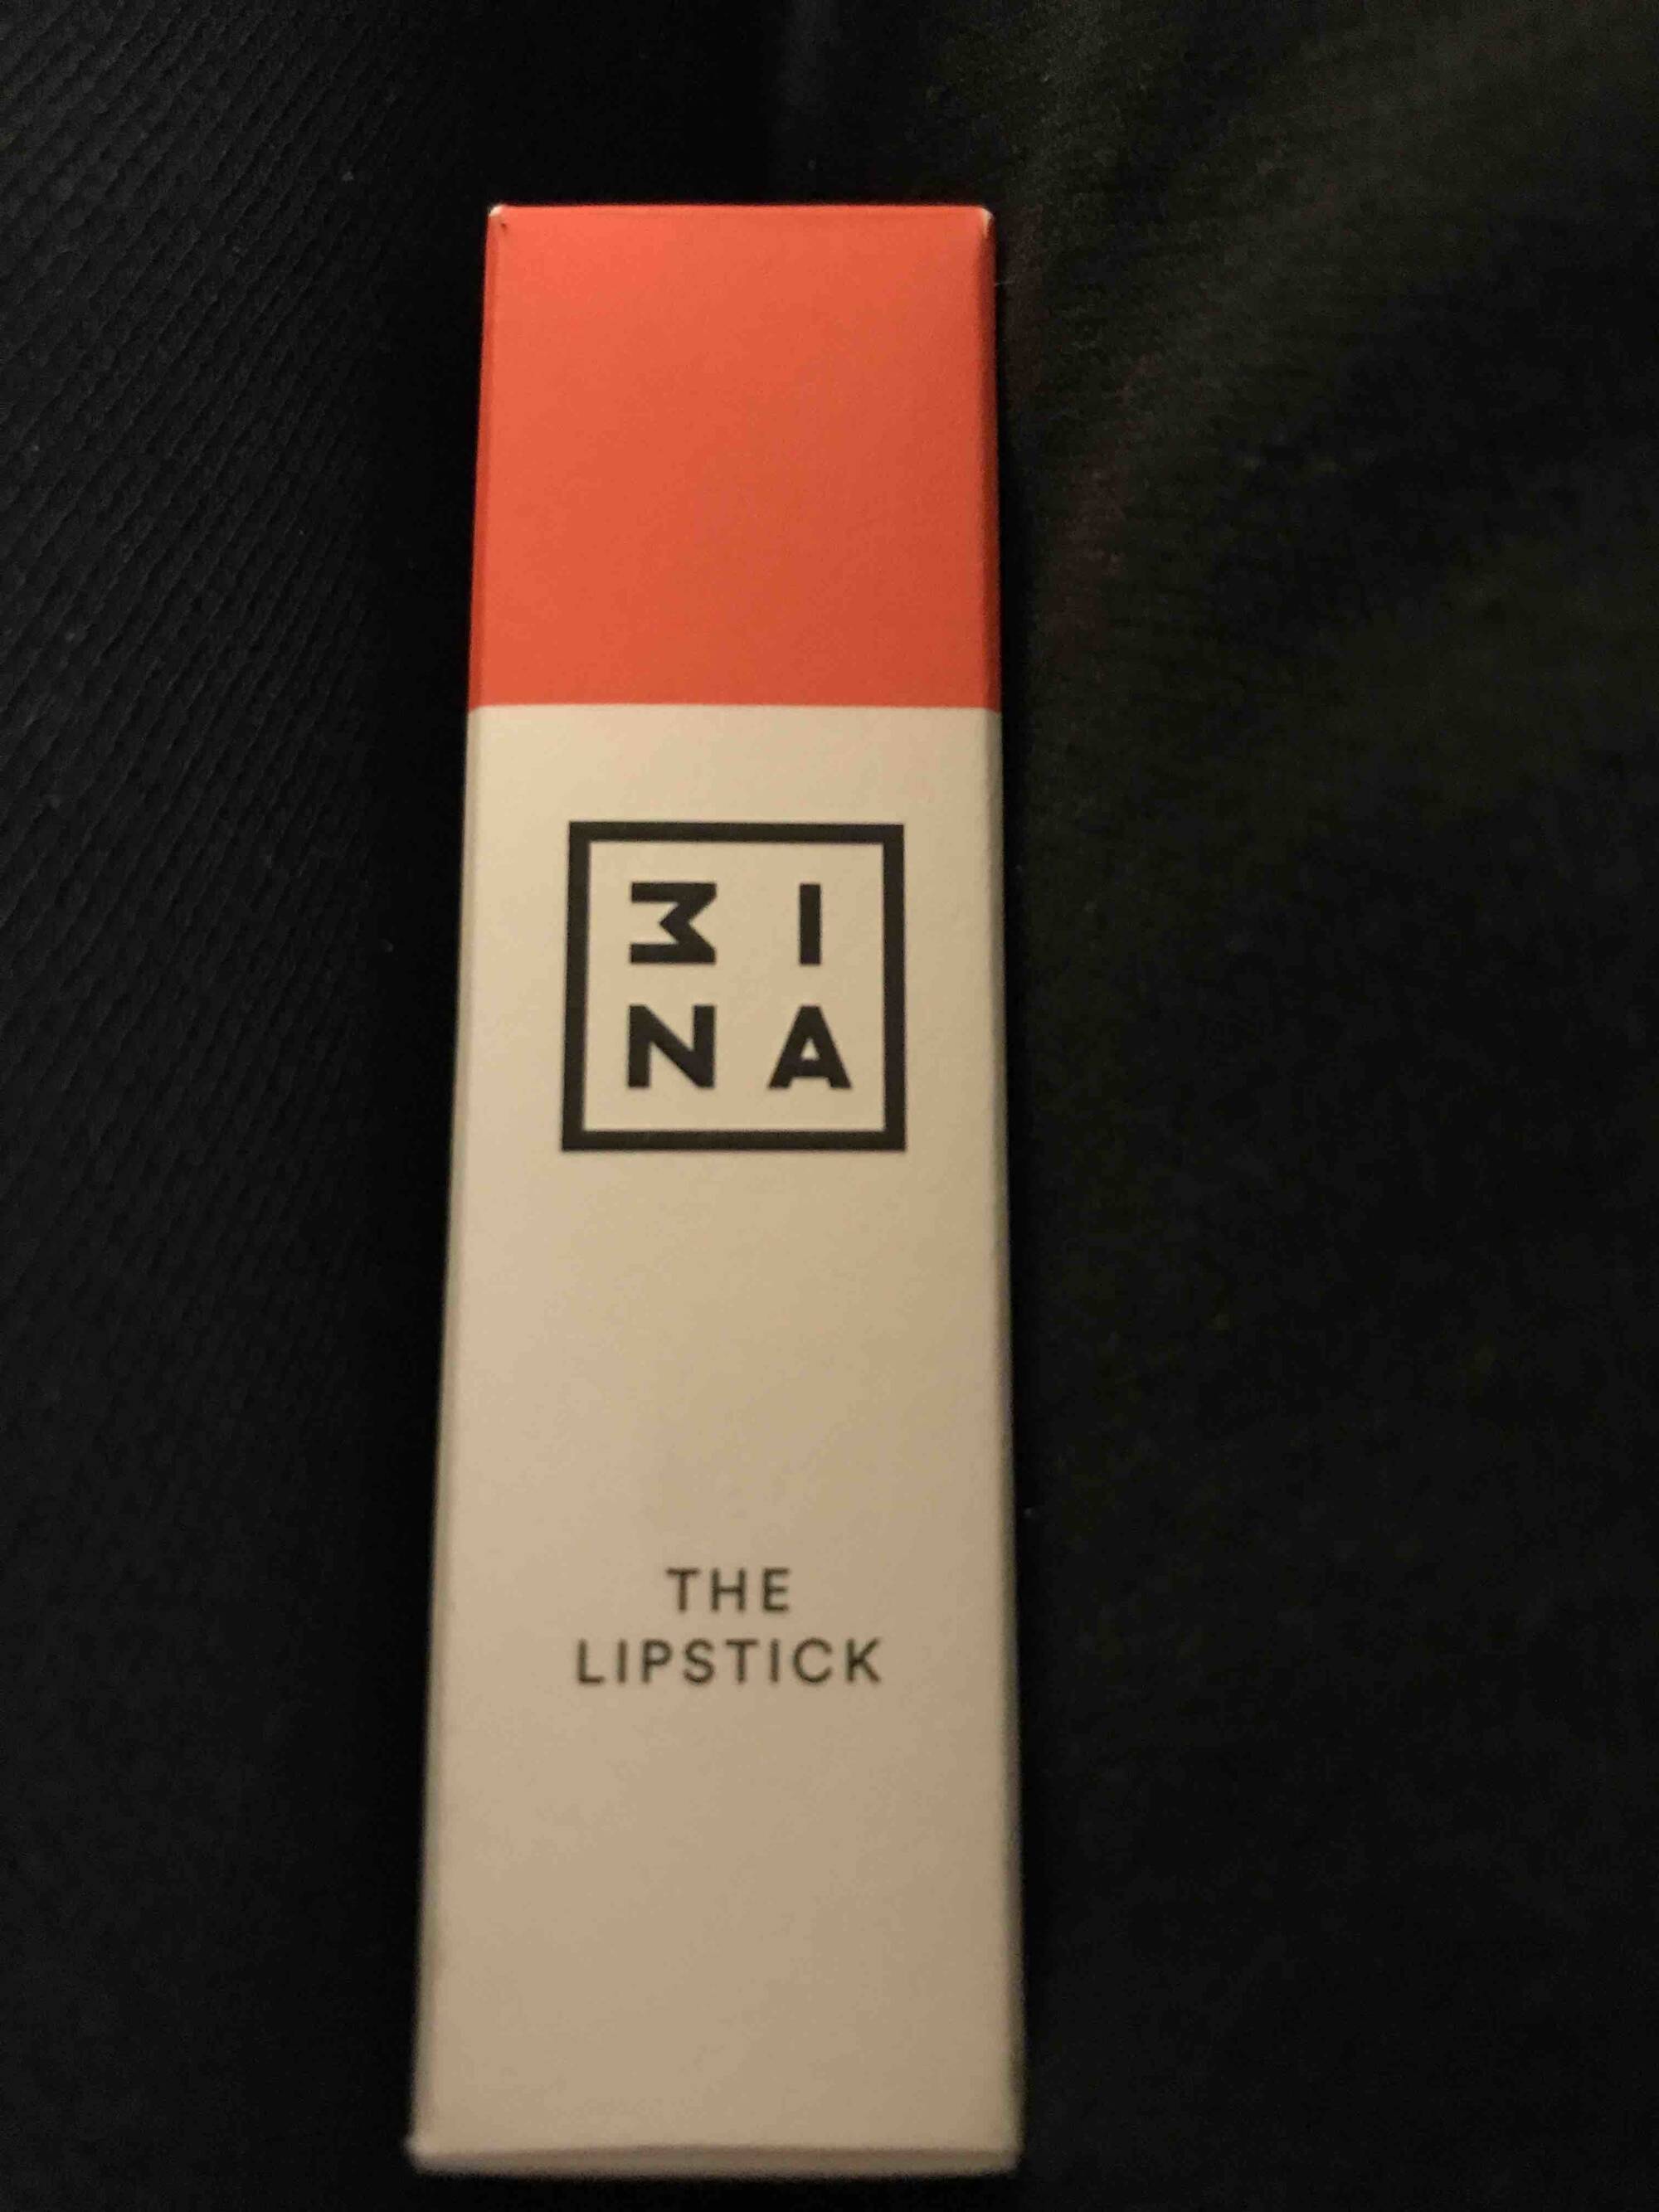 3INA - The lipstick